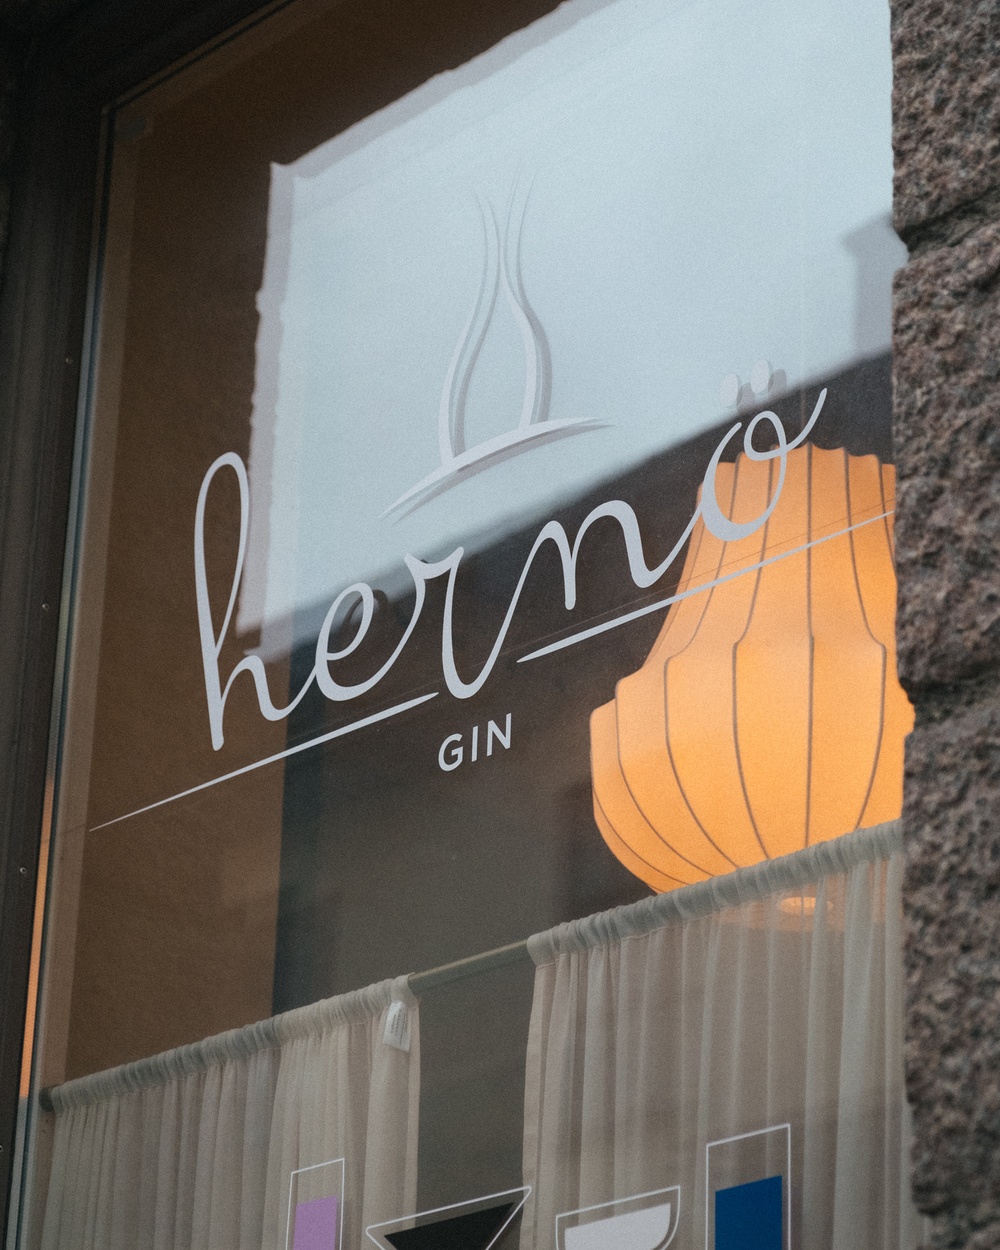 Hernö Gin Bar, Hornsgatan 1, Stockholm, Sweden.